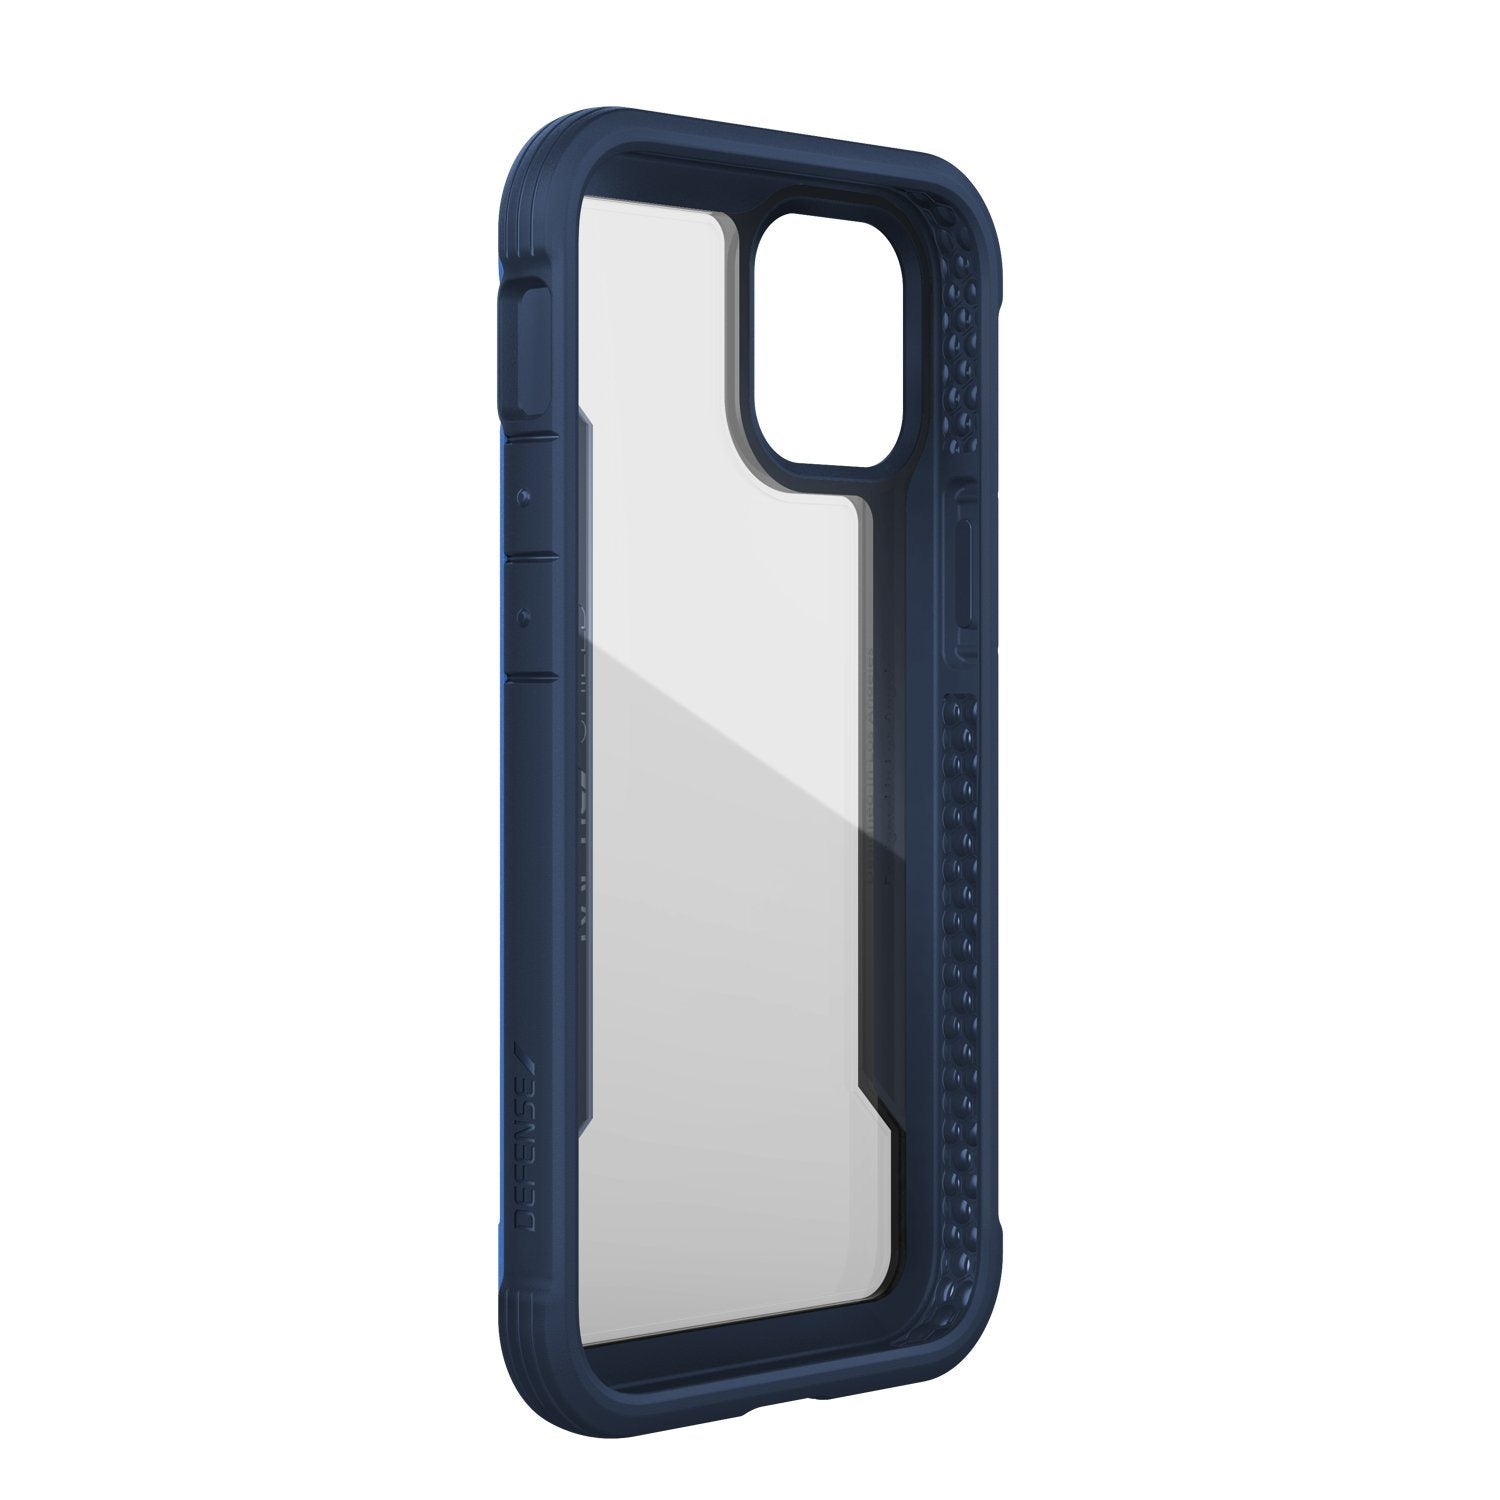 X-Doria Defense Raptic Shield Case for iPhone 12 mini 5.4"(2020)